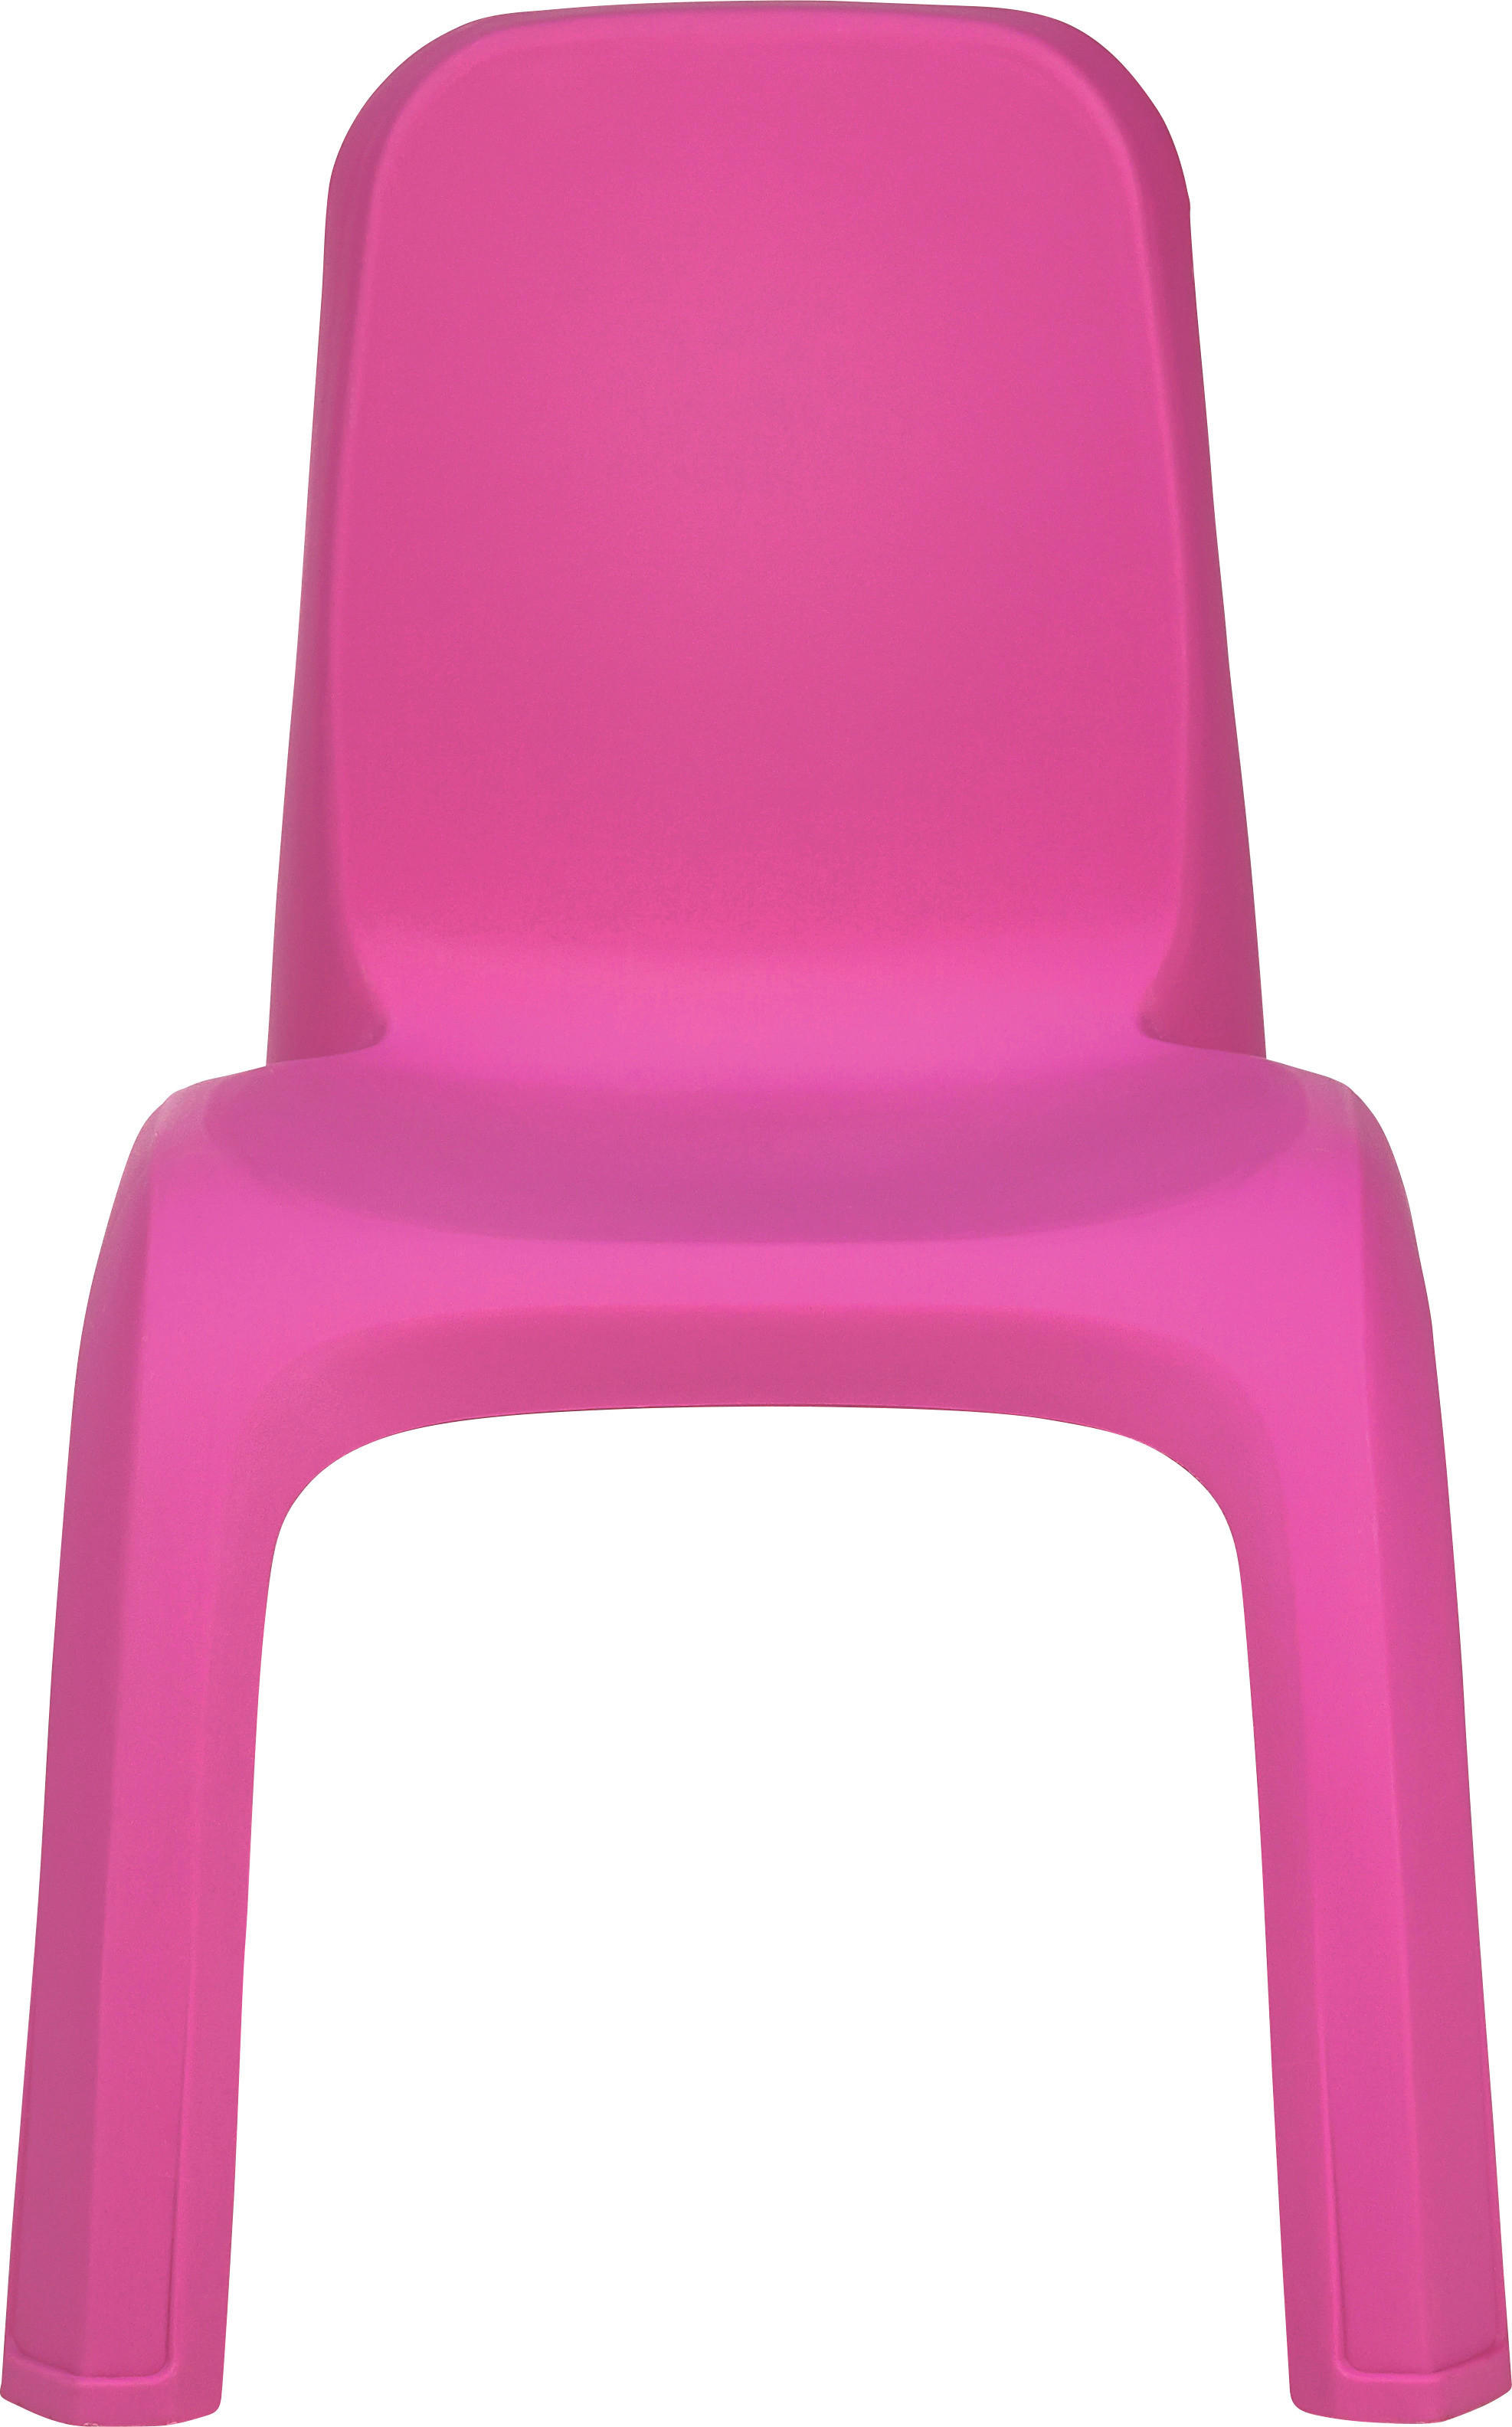 DĚTSKÁ ŽIDLE  - pink, Trend, plast (35/35/54cm) - My Baby Lou